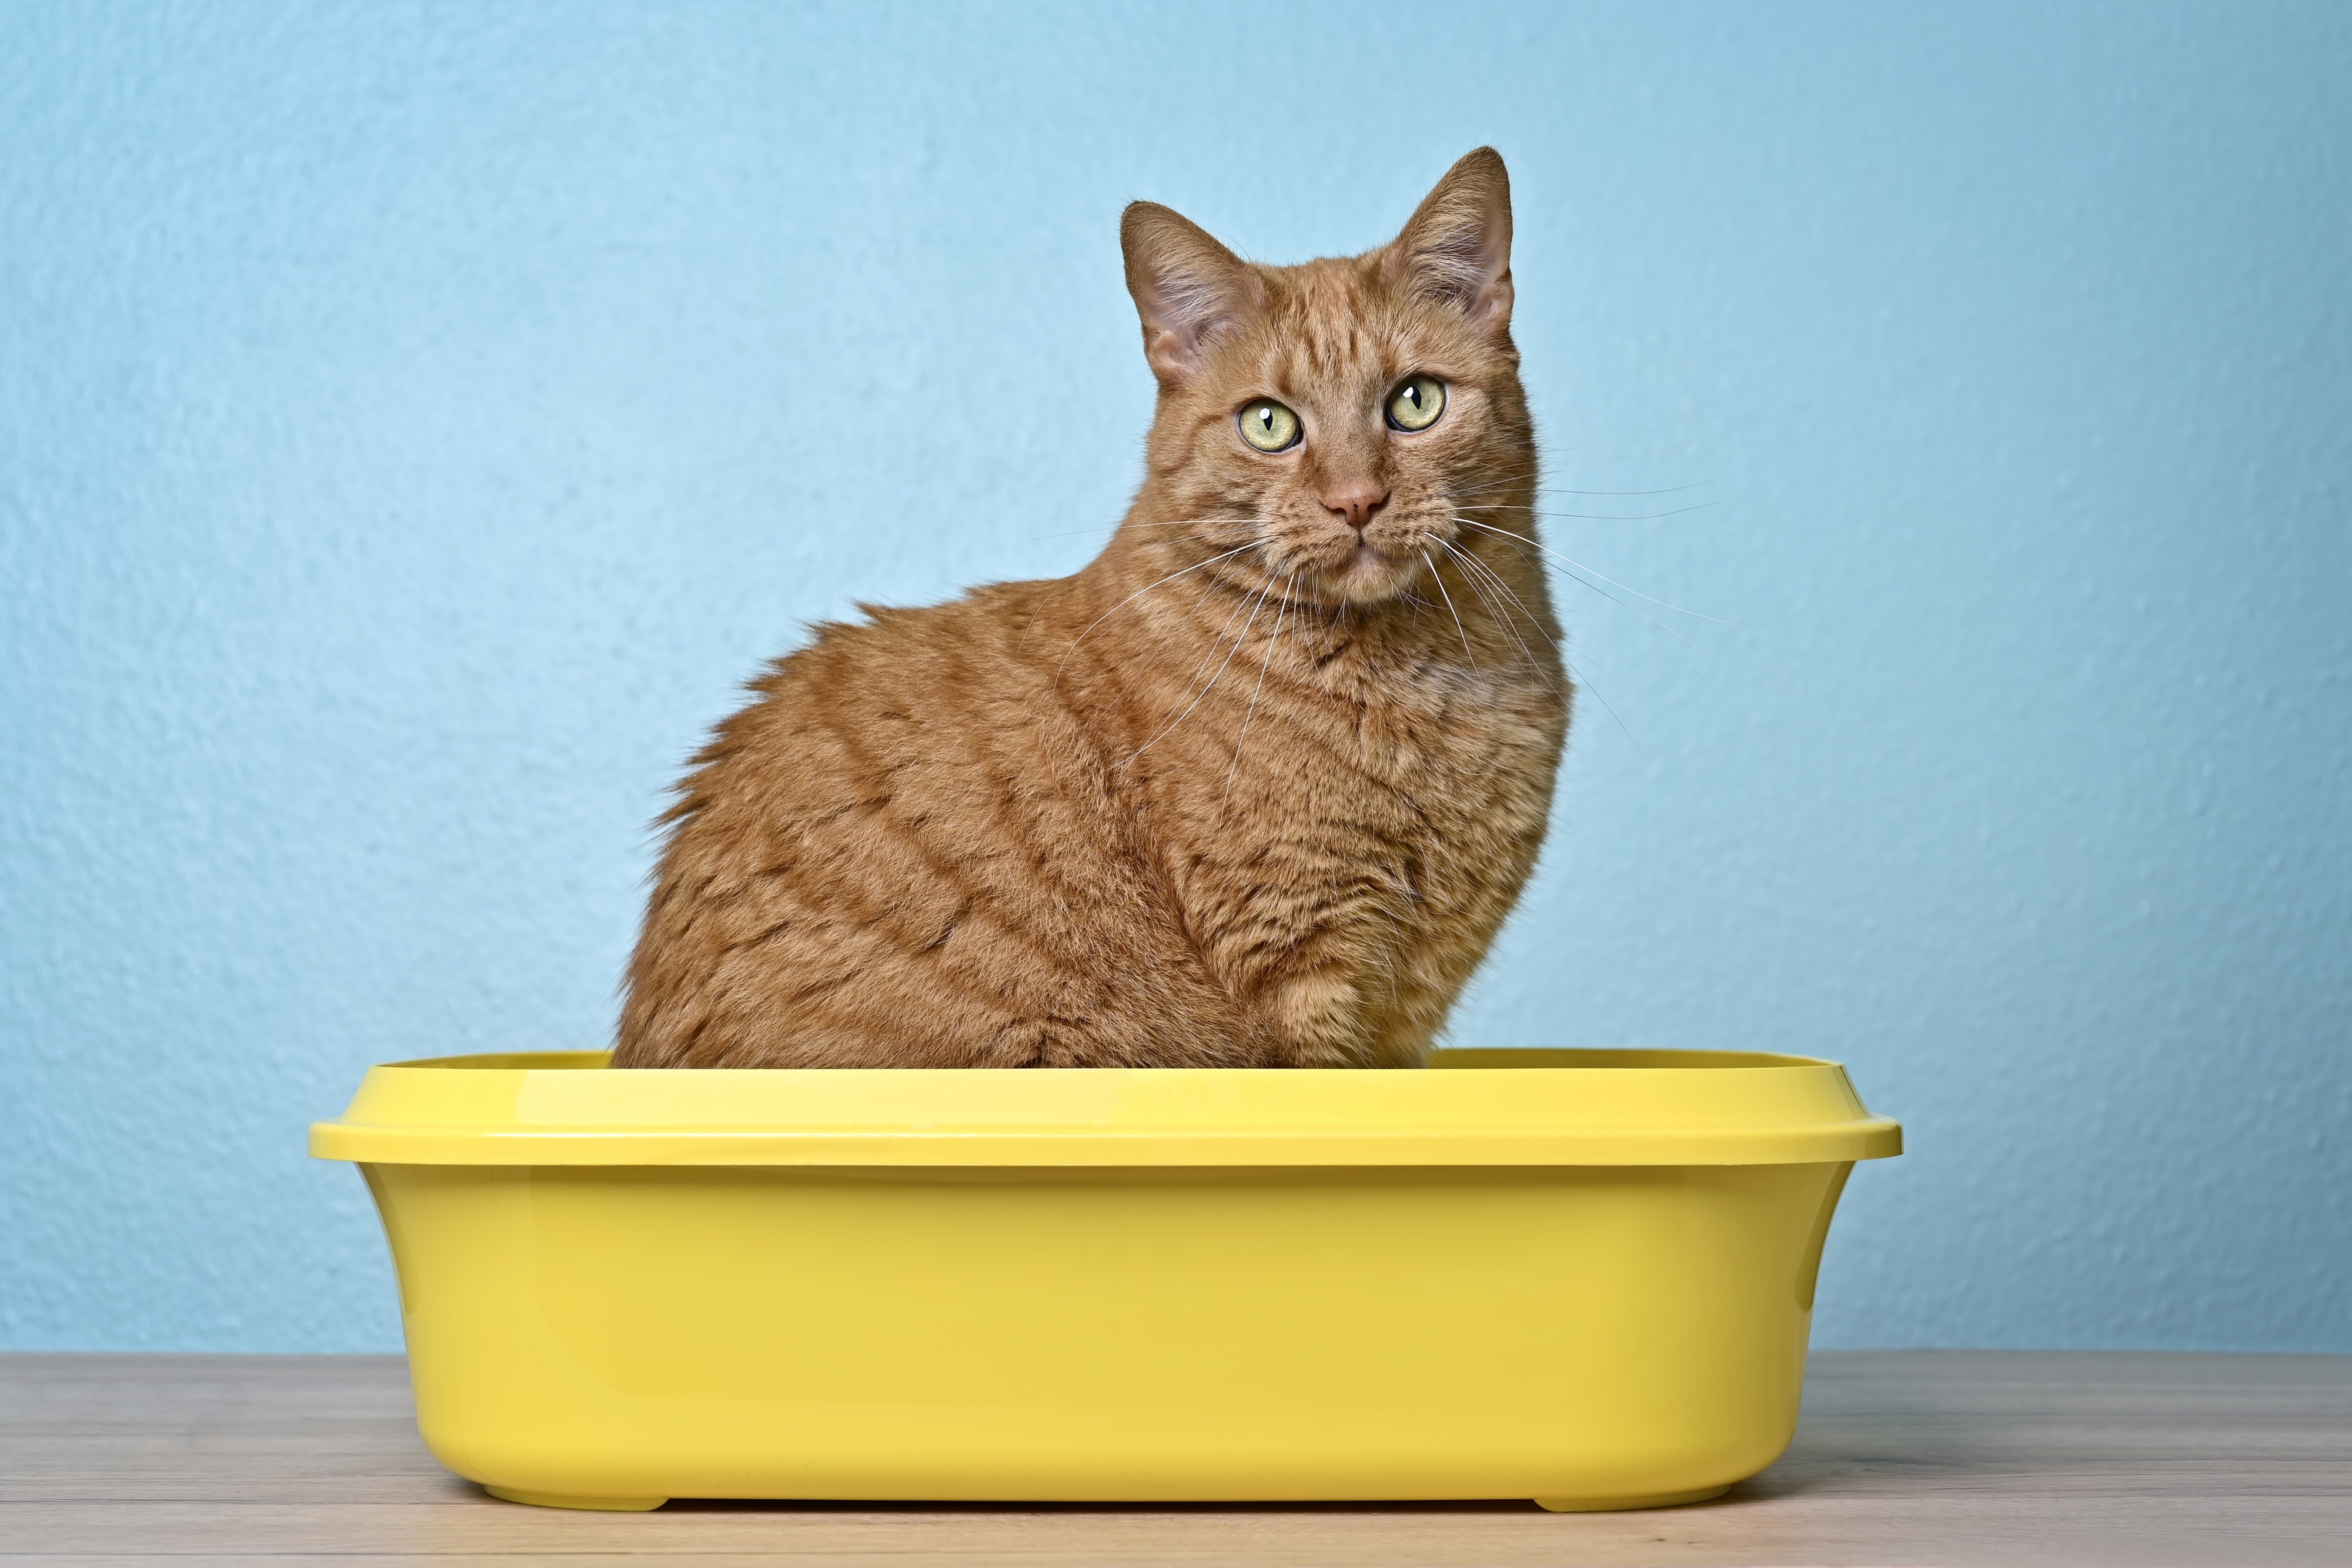 A cat sitting inside a litter box